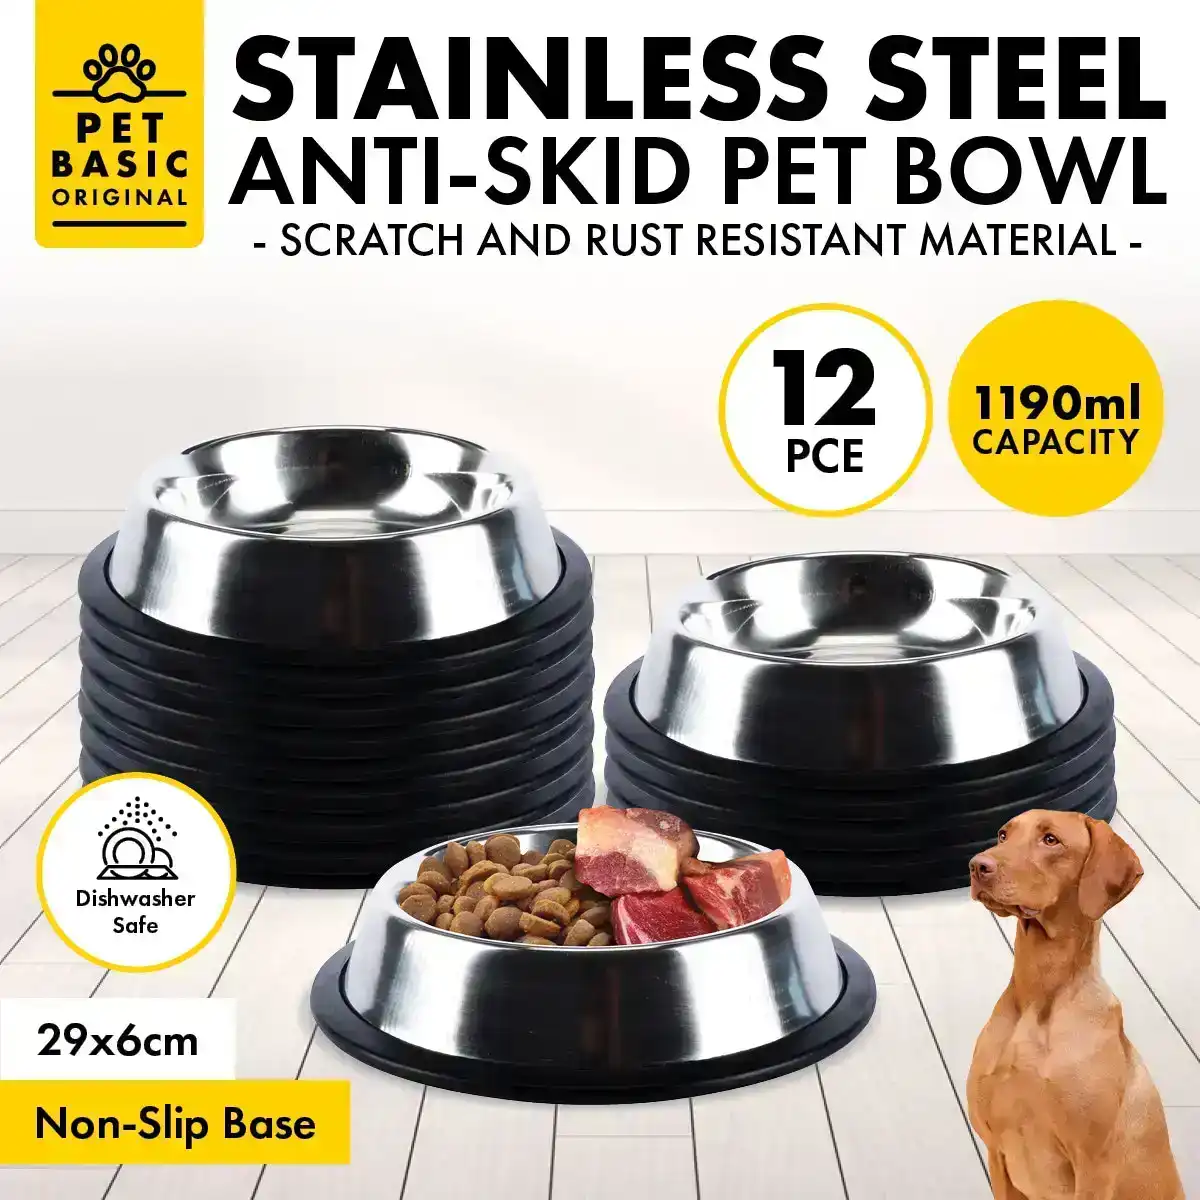 Pet Basic® 12PCE Stainless Steel Bowl 29cm Non Slip Base Rust Resistant 1190ml